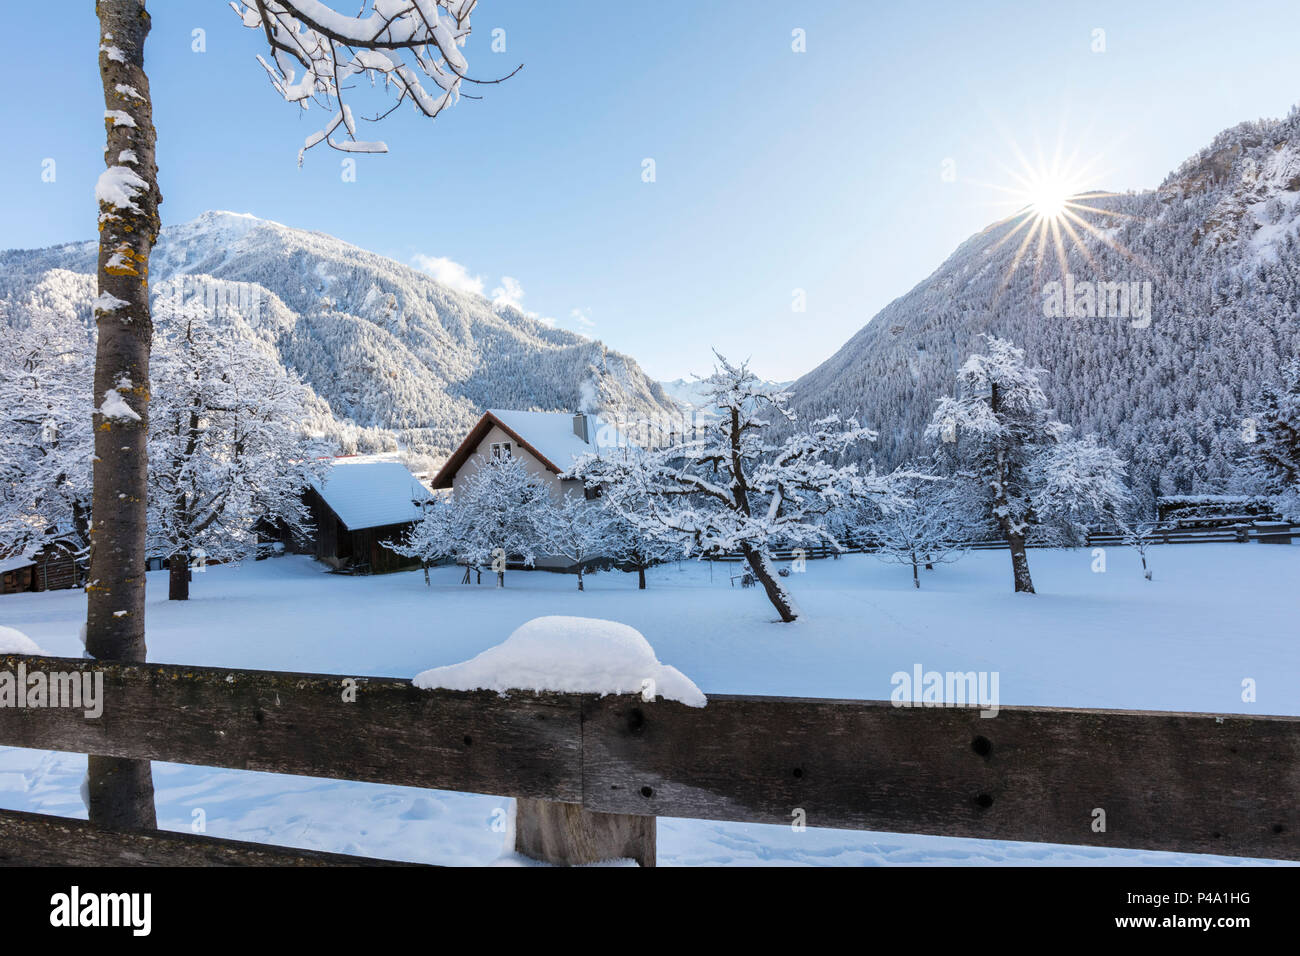 Filisur in winter, Albula Valley, Canton of Graubünden, Switzerland Stock Photo